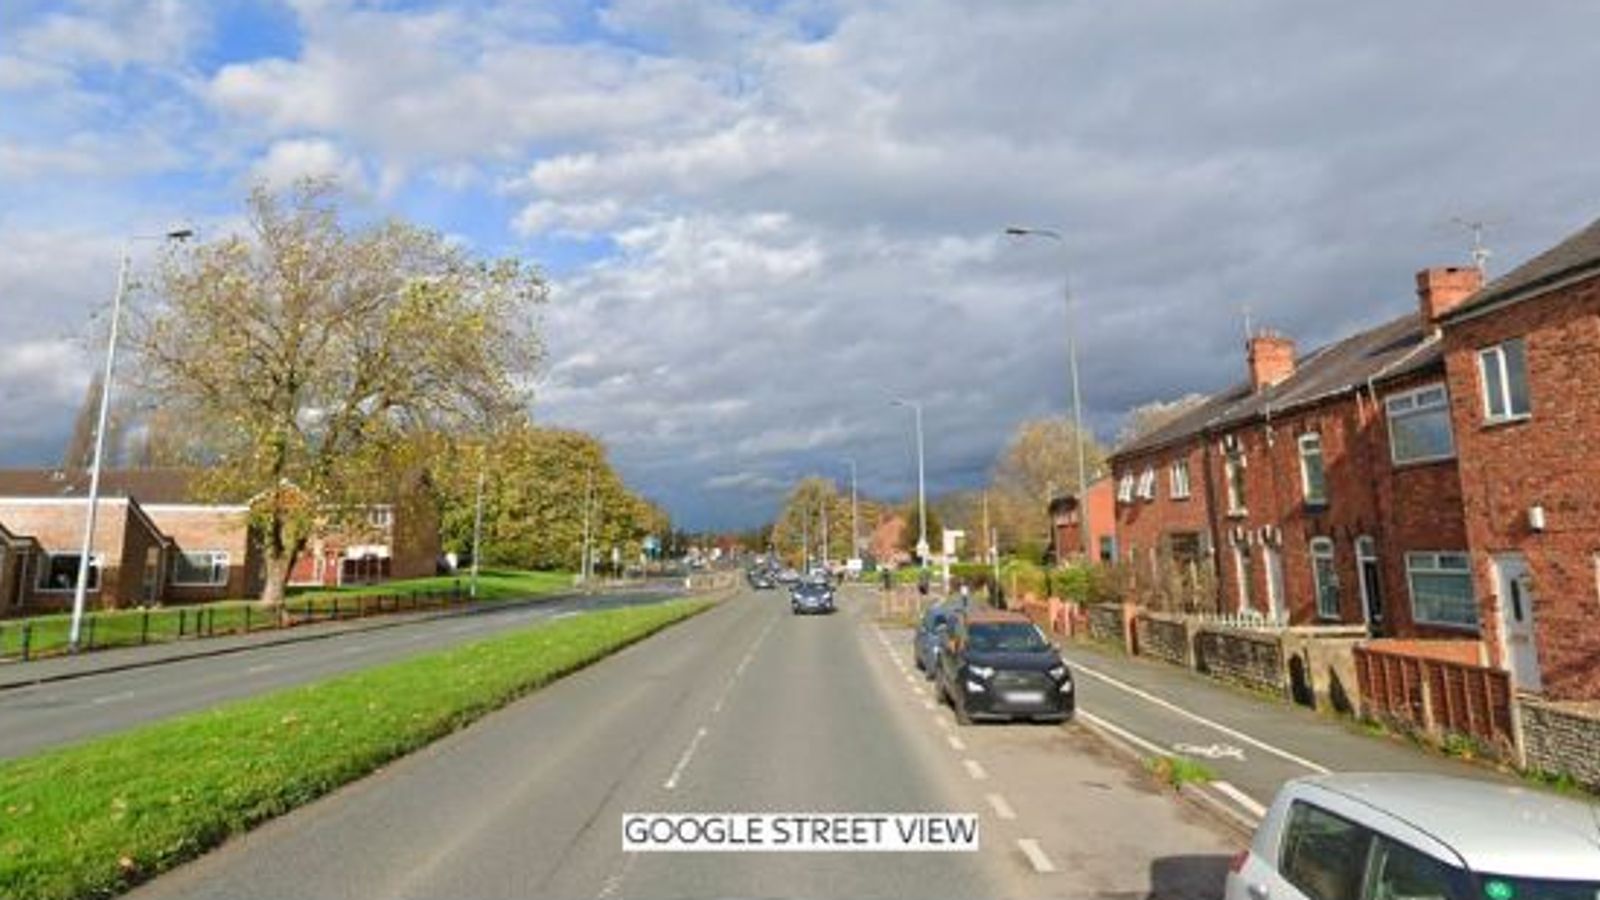 Wigan fire: Boy, 4, dies from injuries after 'devastating' blaze which also killed man